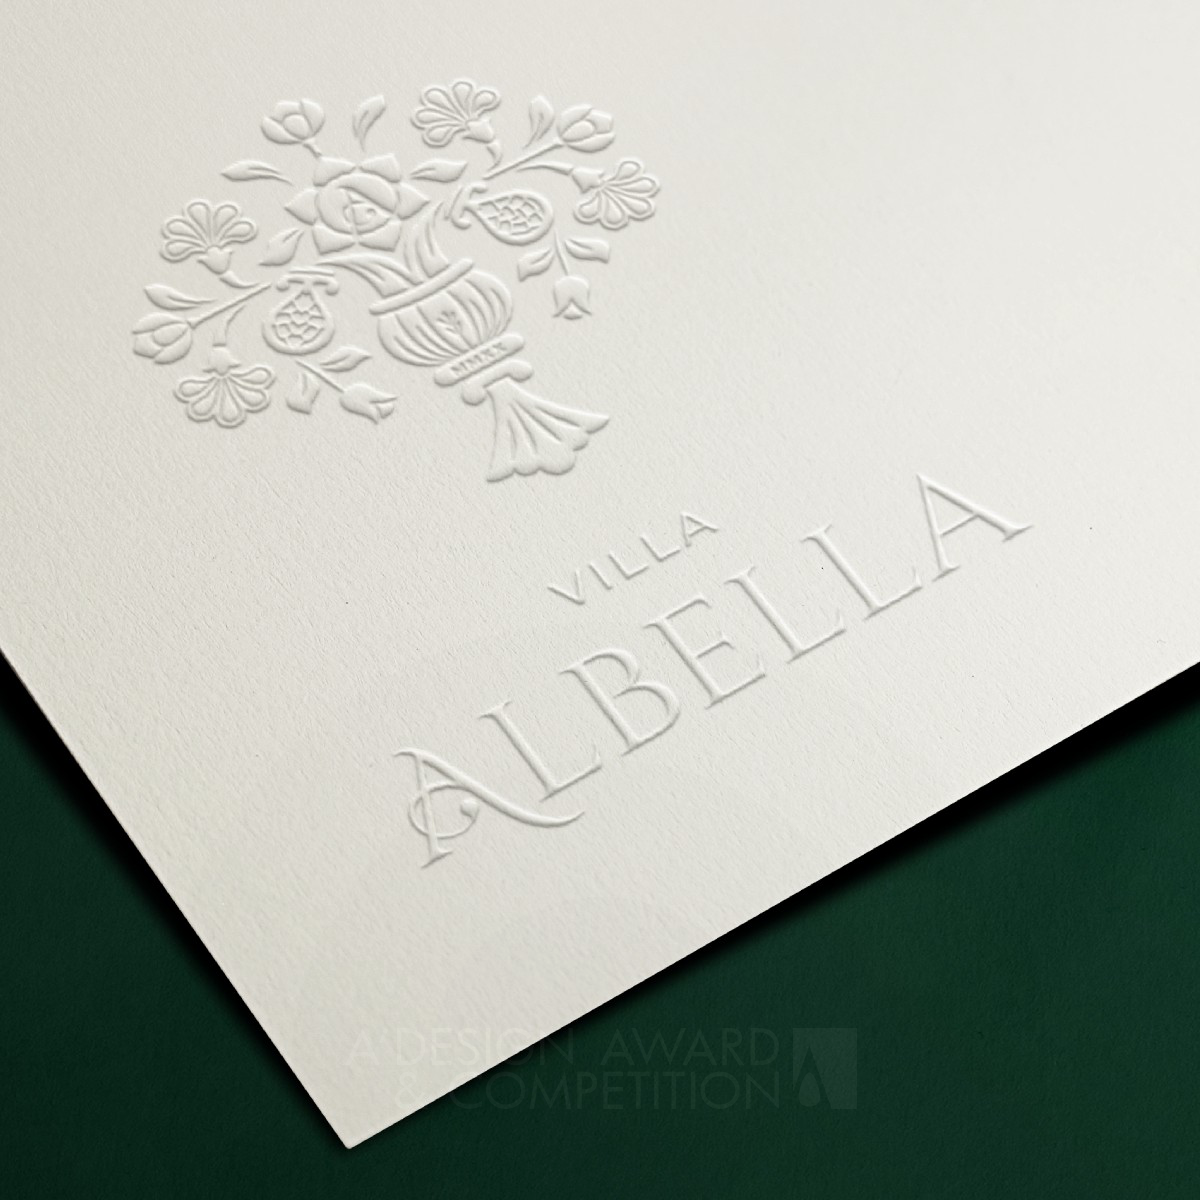 Albella Brand Identity by Elena Gamalova